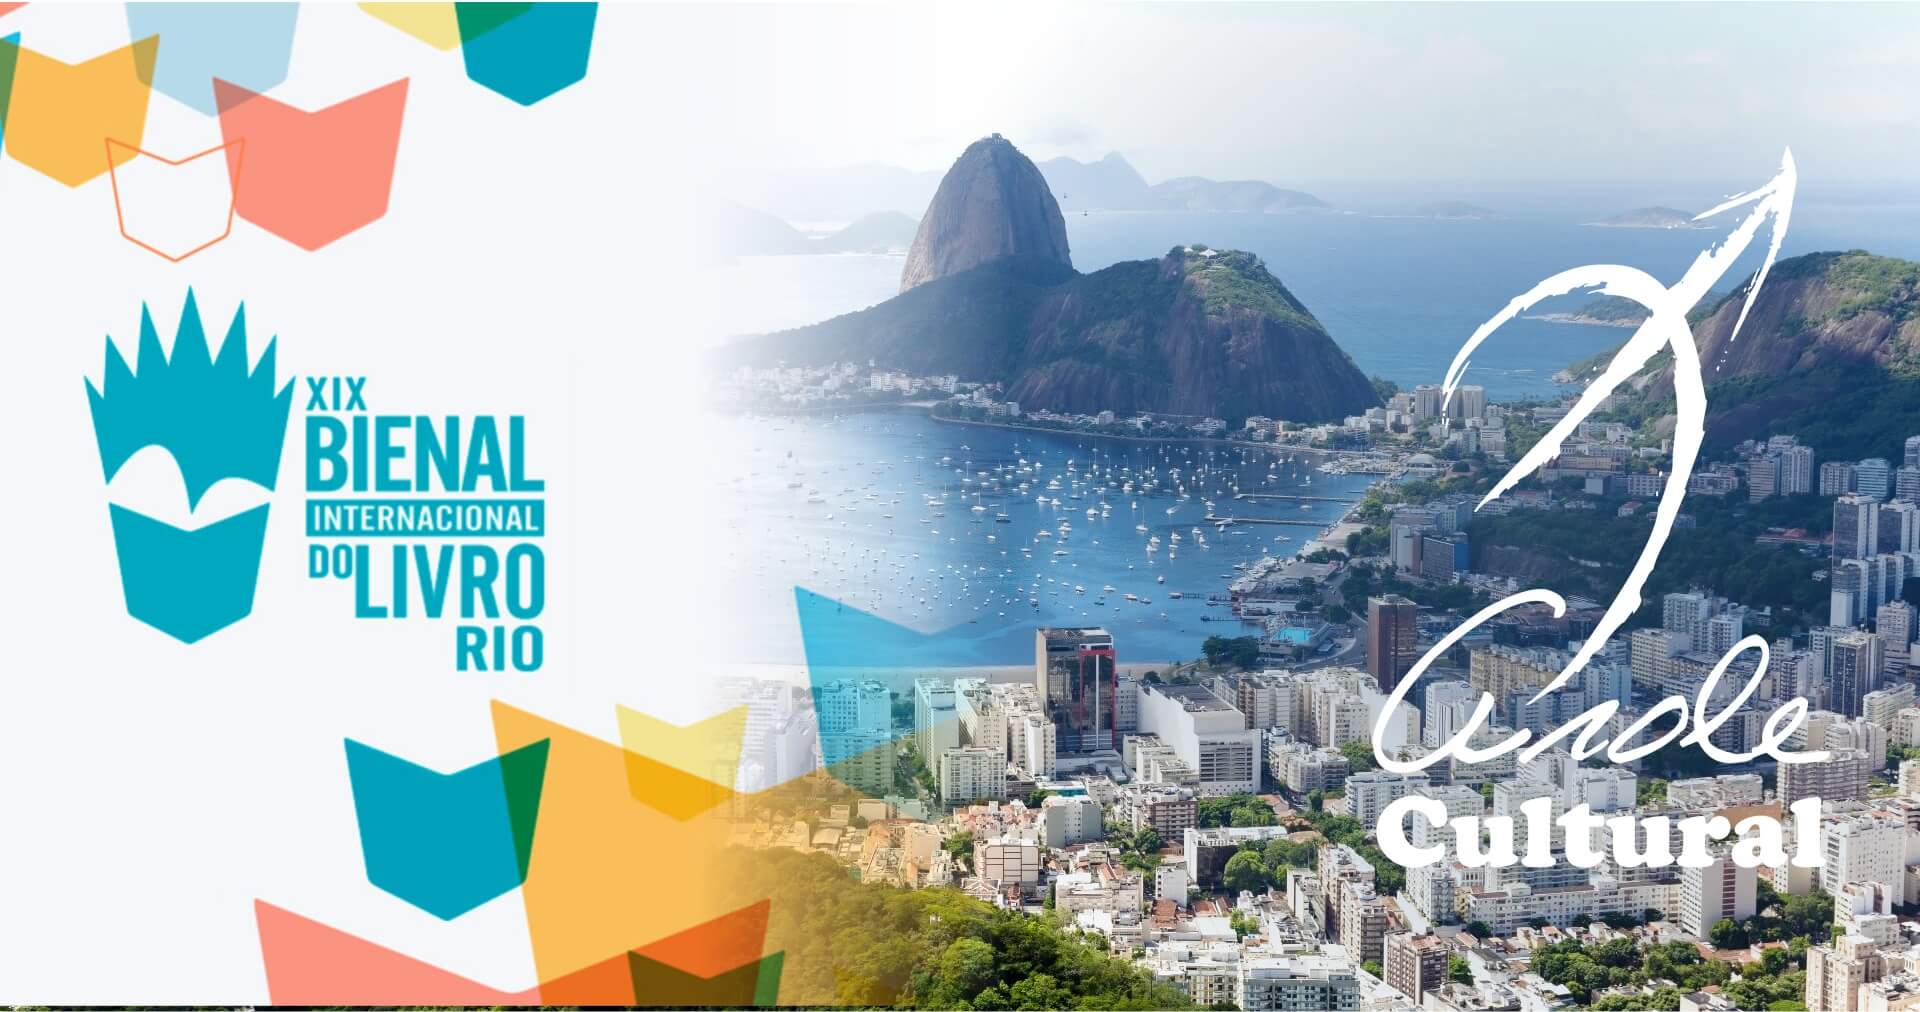 Arole Cultural | Editora terá estande com atividades culturais gratuitas, sessões de autógrafos e autores na programação oficial da Bienal do Livro no Rio de Janeiro